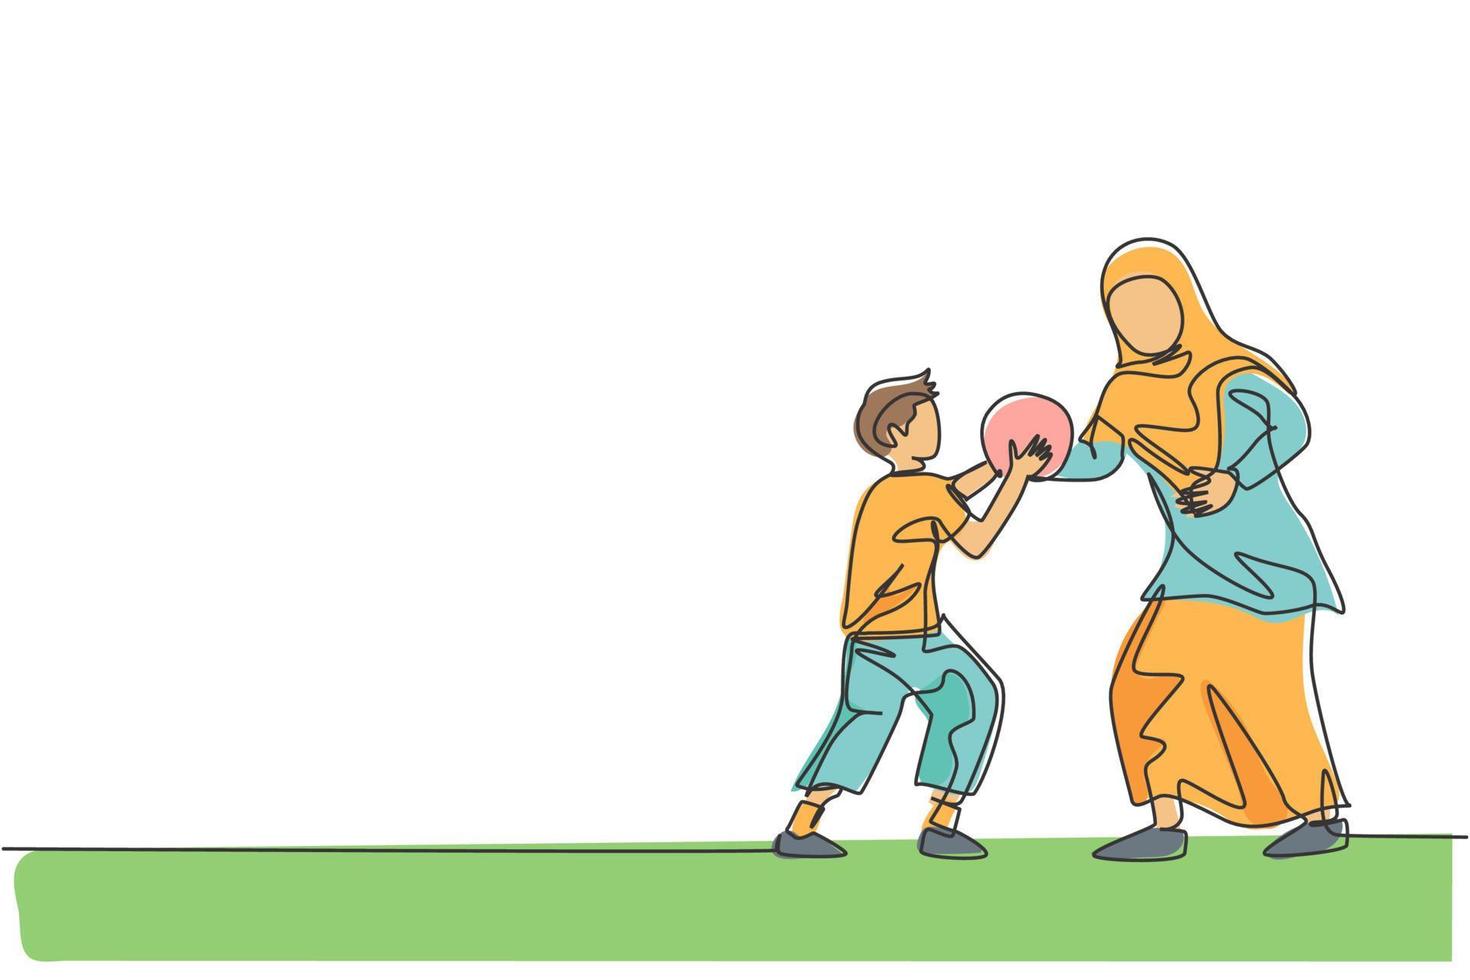 un unico disegno a tratteggio di una giovane madre islamica che gioca a basket con suo figlio al parco pubblico illustrazione vettoriale. concetto di genitorialità familiare musulmana araba. design moderno a linea continua vettore